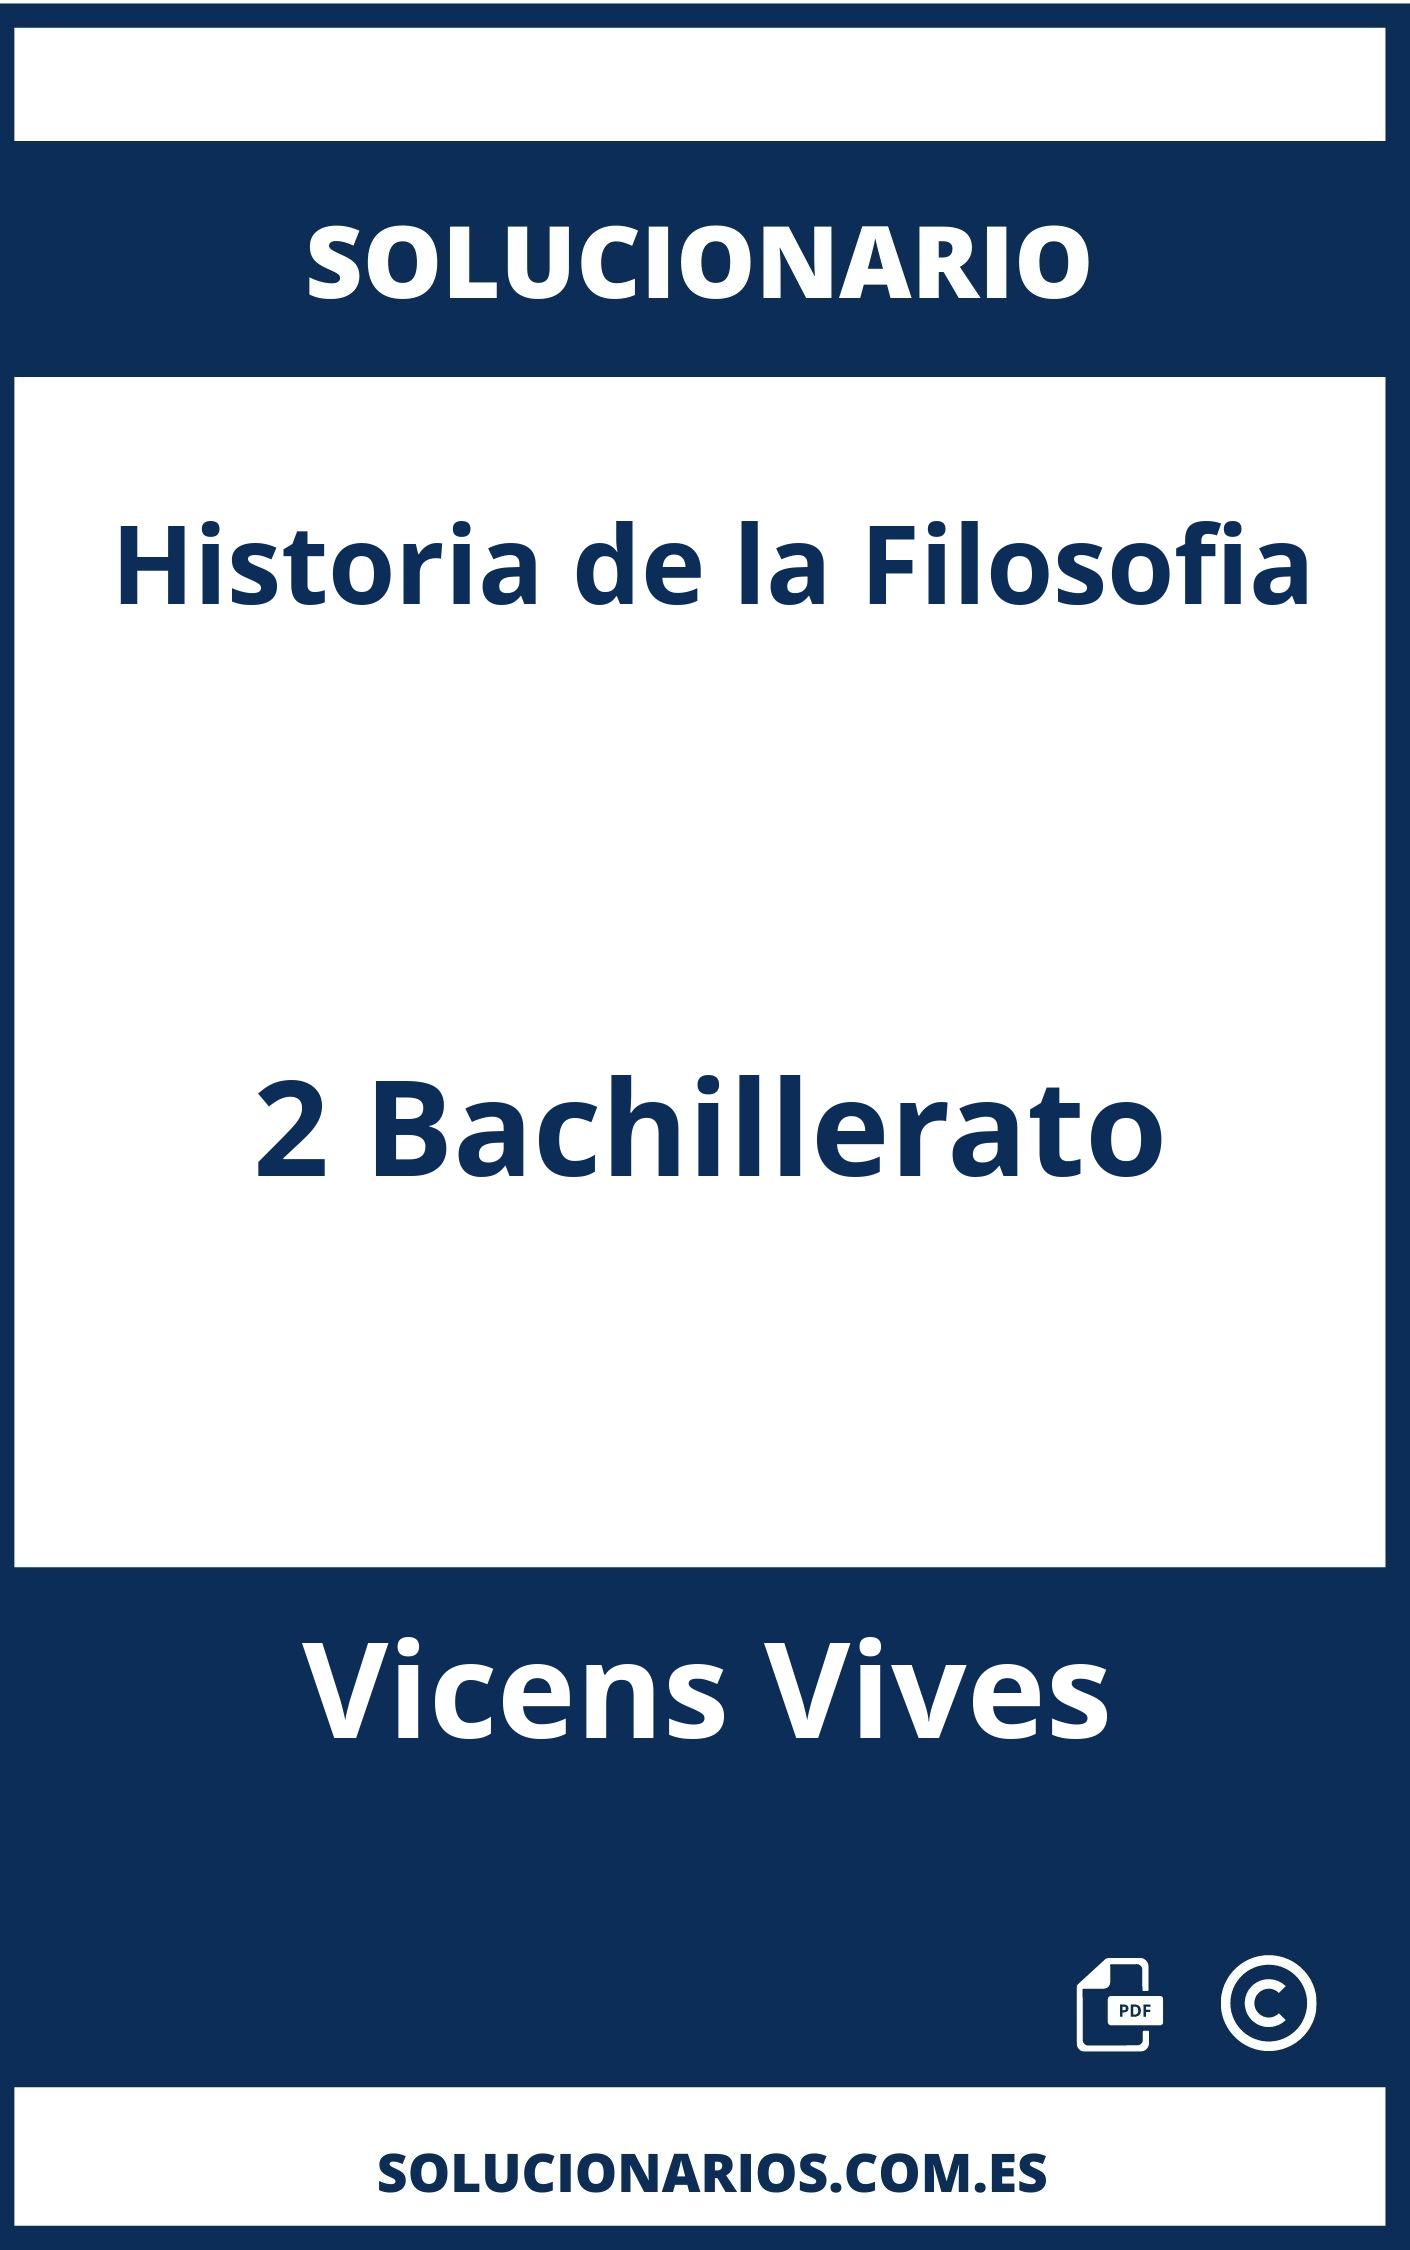 Solucionario Historia de la Filosofia 2 Bachillerato Vicens Vives